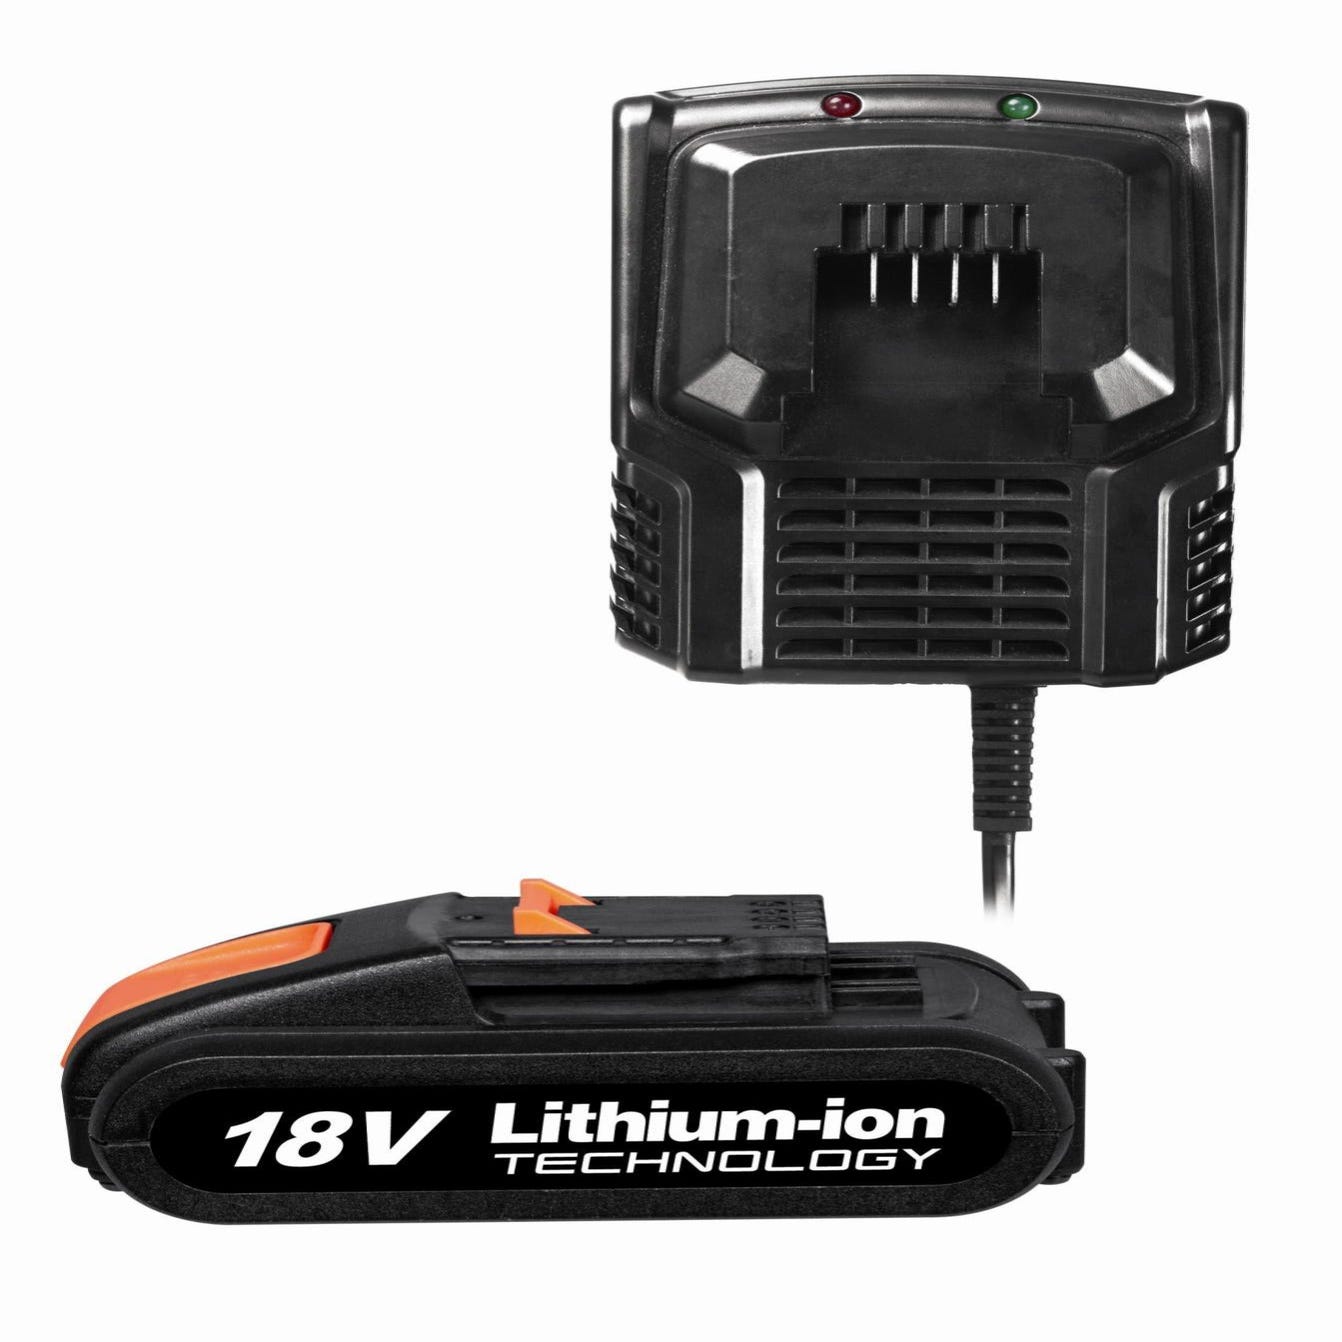 Chargeur standard lithium-ion LEXMAN UP40, 36V, pour batterie STERWINS et  DEXTER, Leroy Merlin